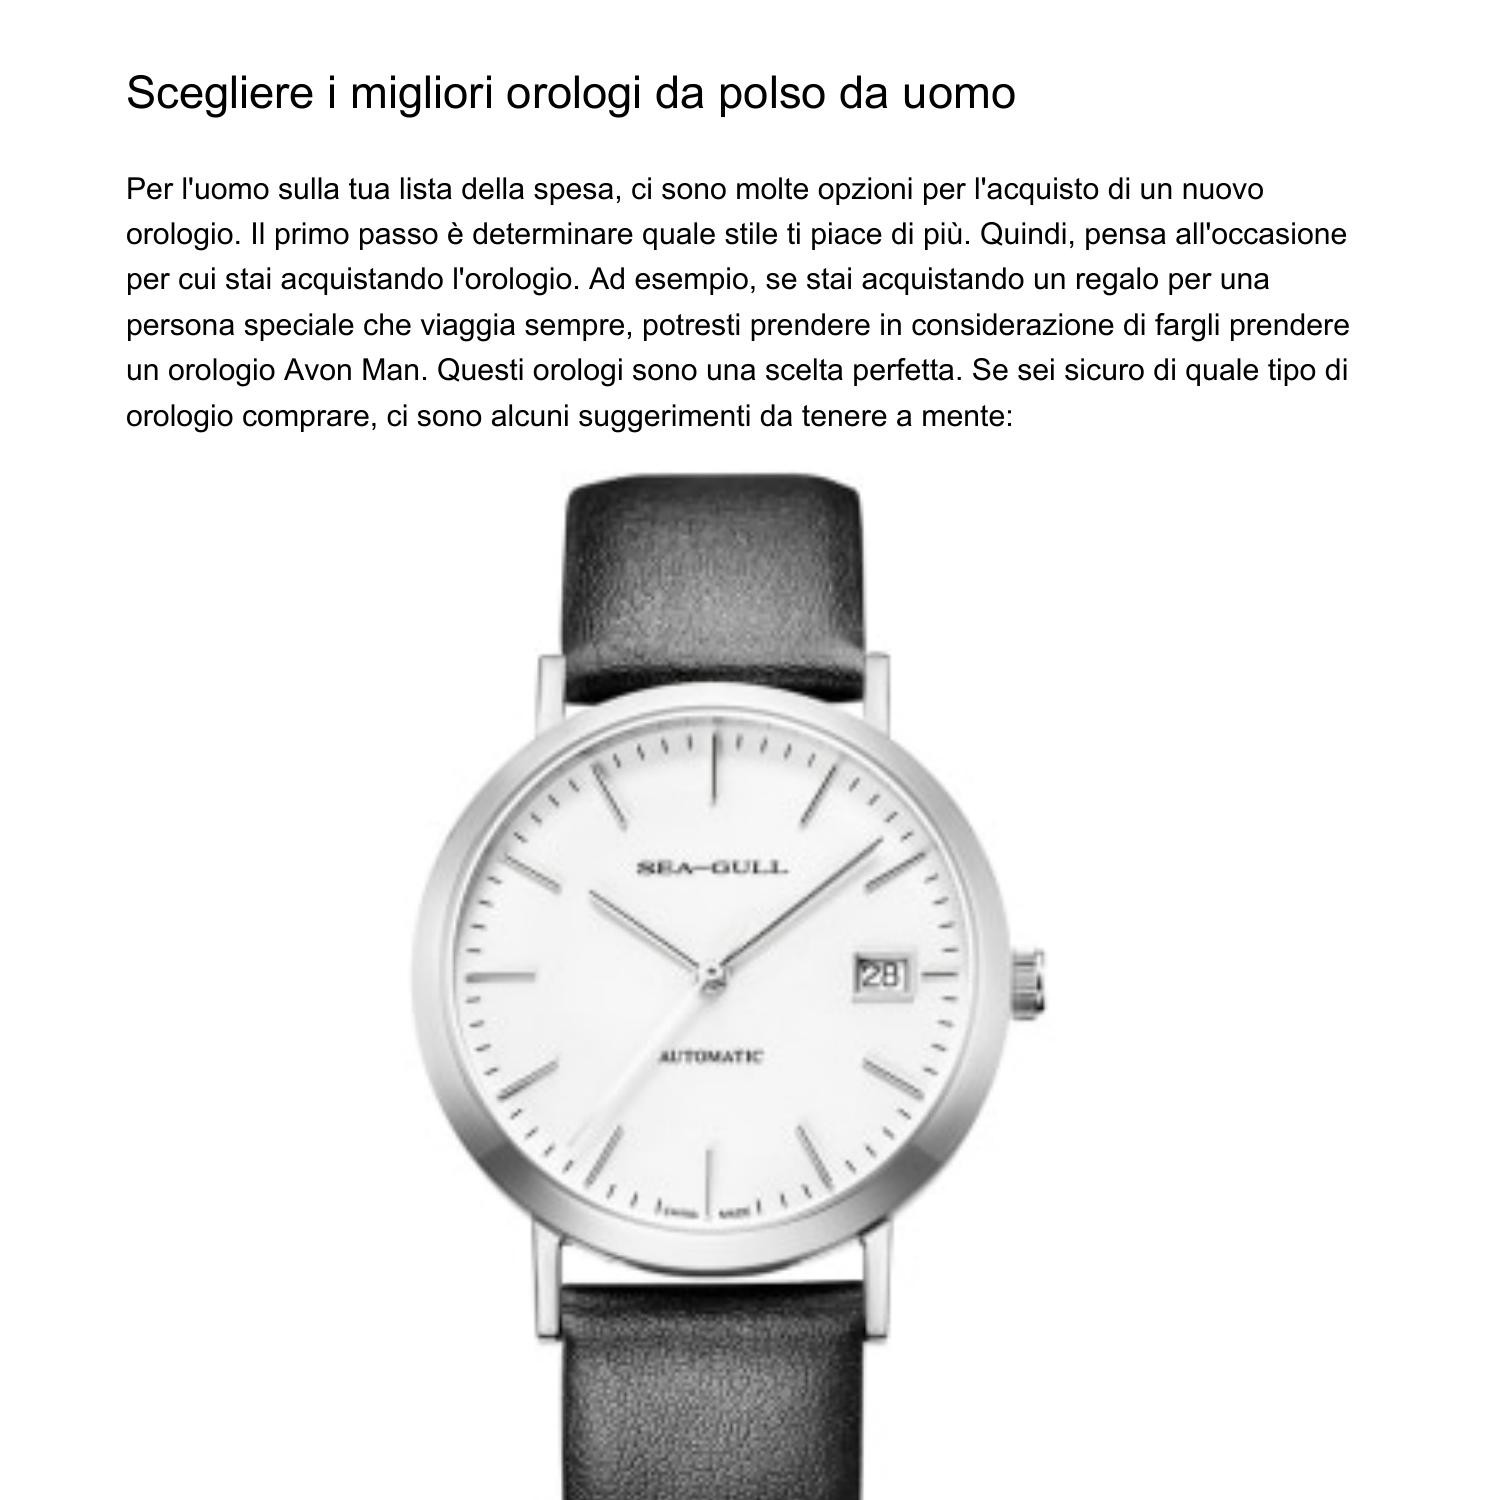 Scegliere i migliori orologi da polso da uomohtnot.pdf.pdf | DocDroid